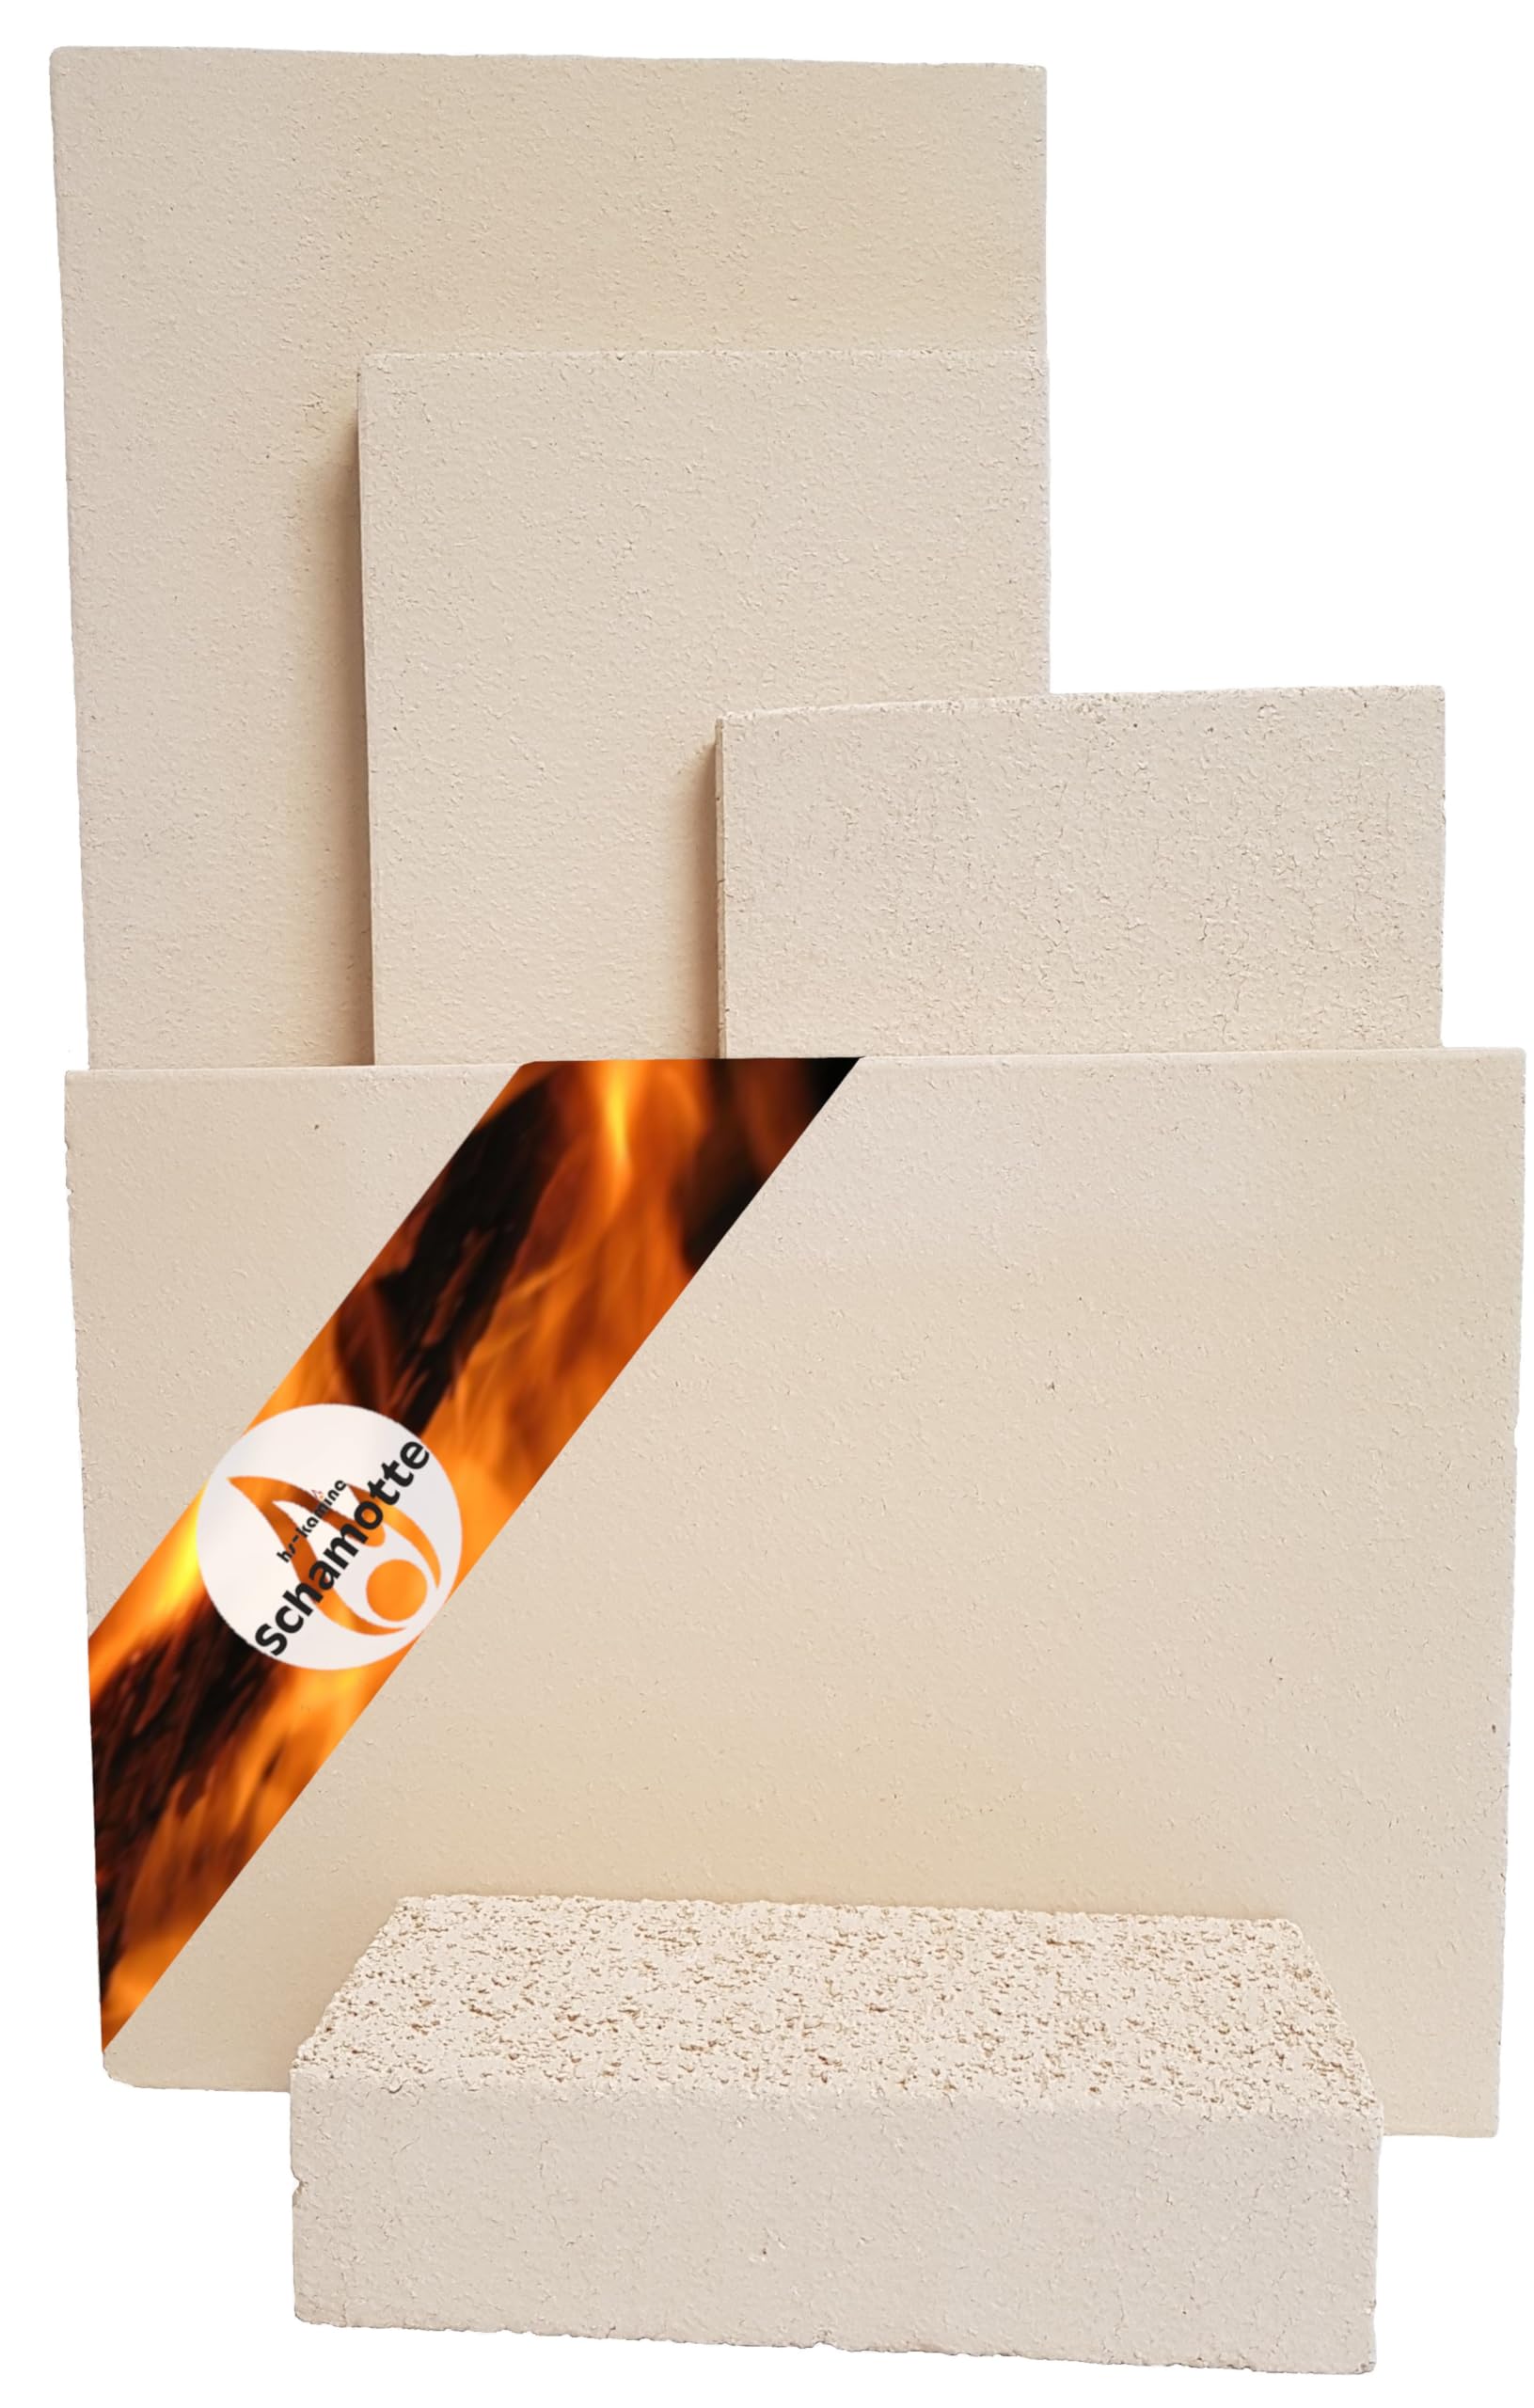 Schamotteplatten Premium Wh für den Feuerraum und auch für Holzbacköfen, Pizzaöfen und Grills feuerfest & lebensmittelecht viele Größen online verfügbar (400 x 300 x 20 mm, 3 Stück)